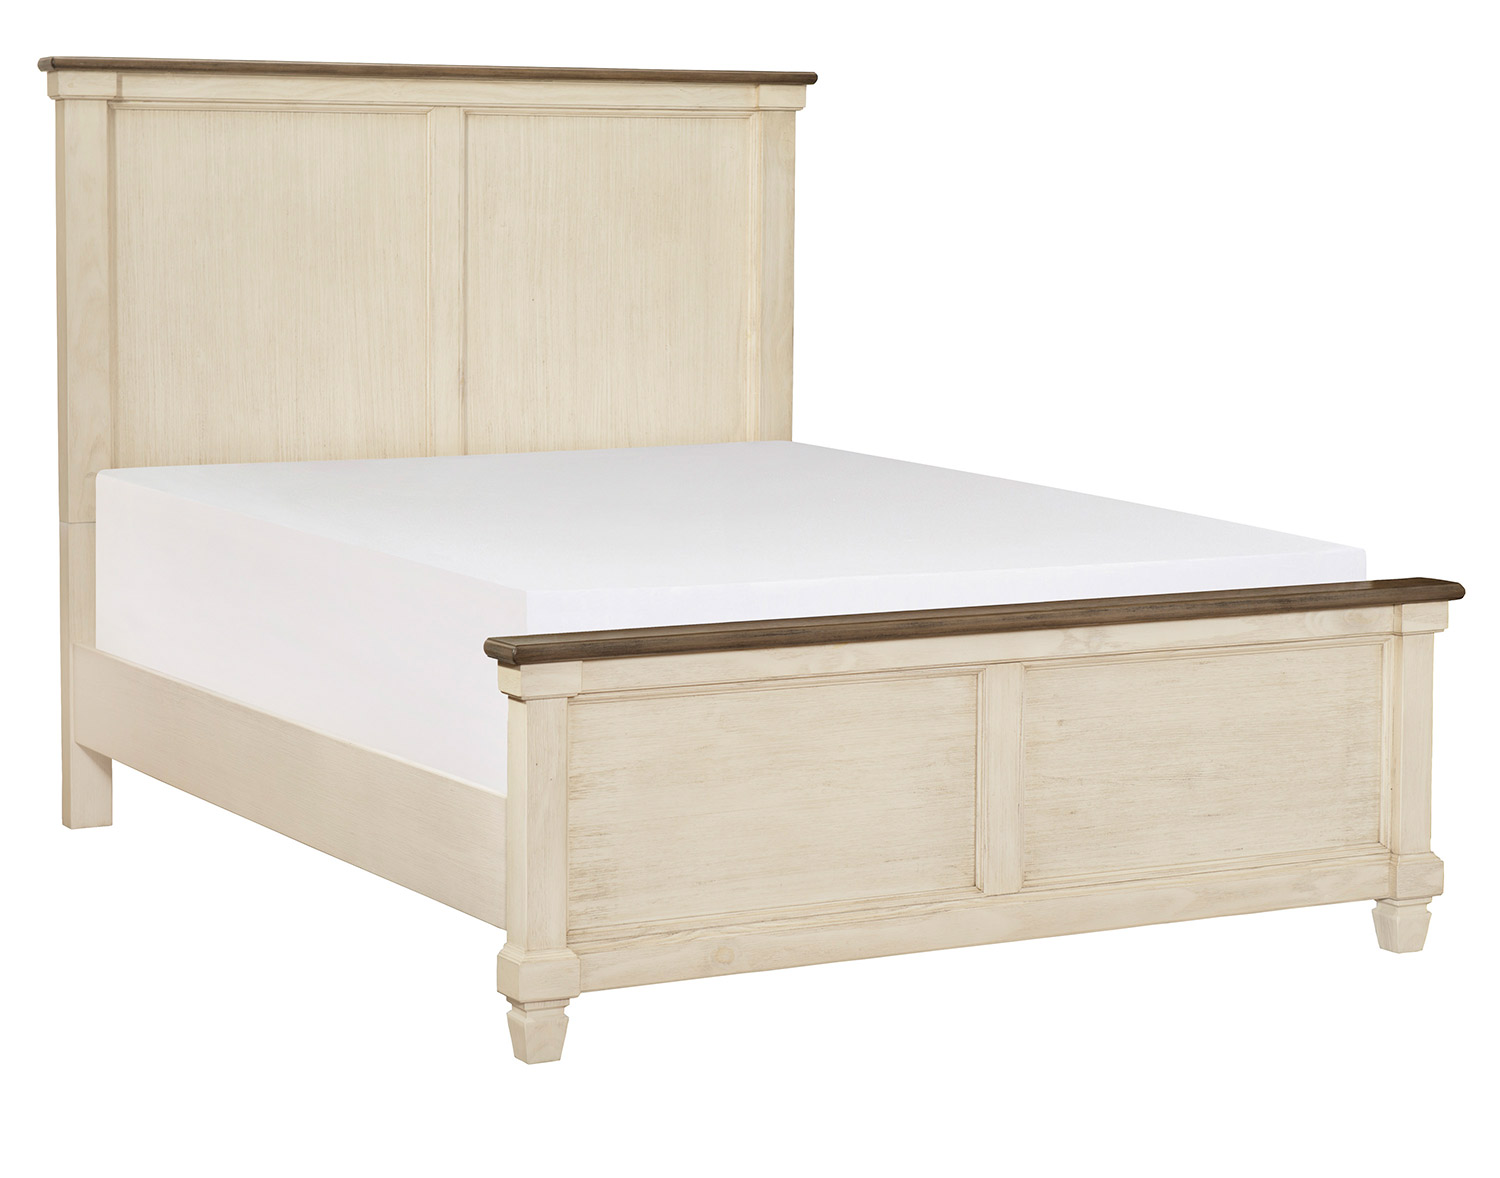 Homelegance Weaver Bed - Antique White